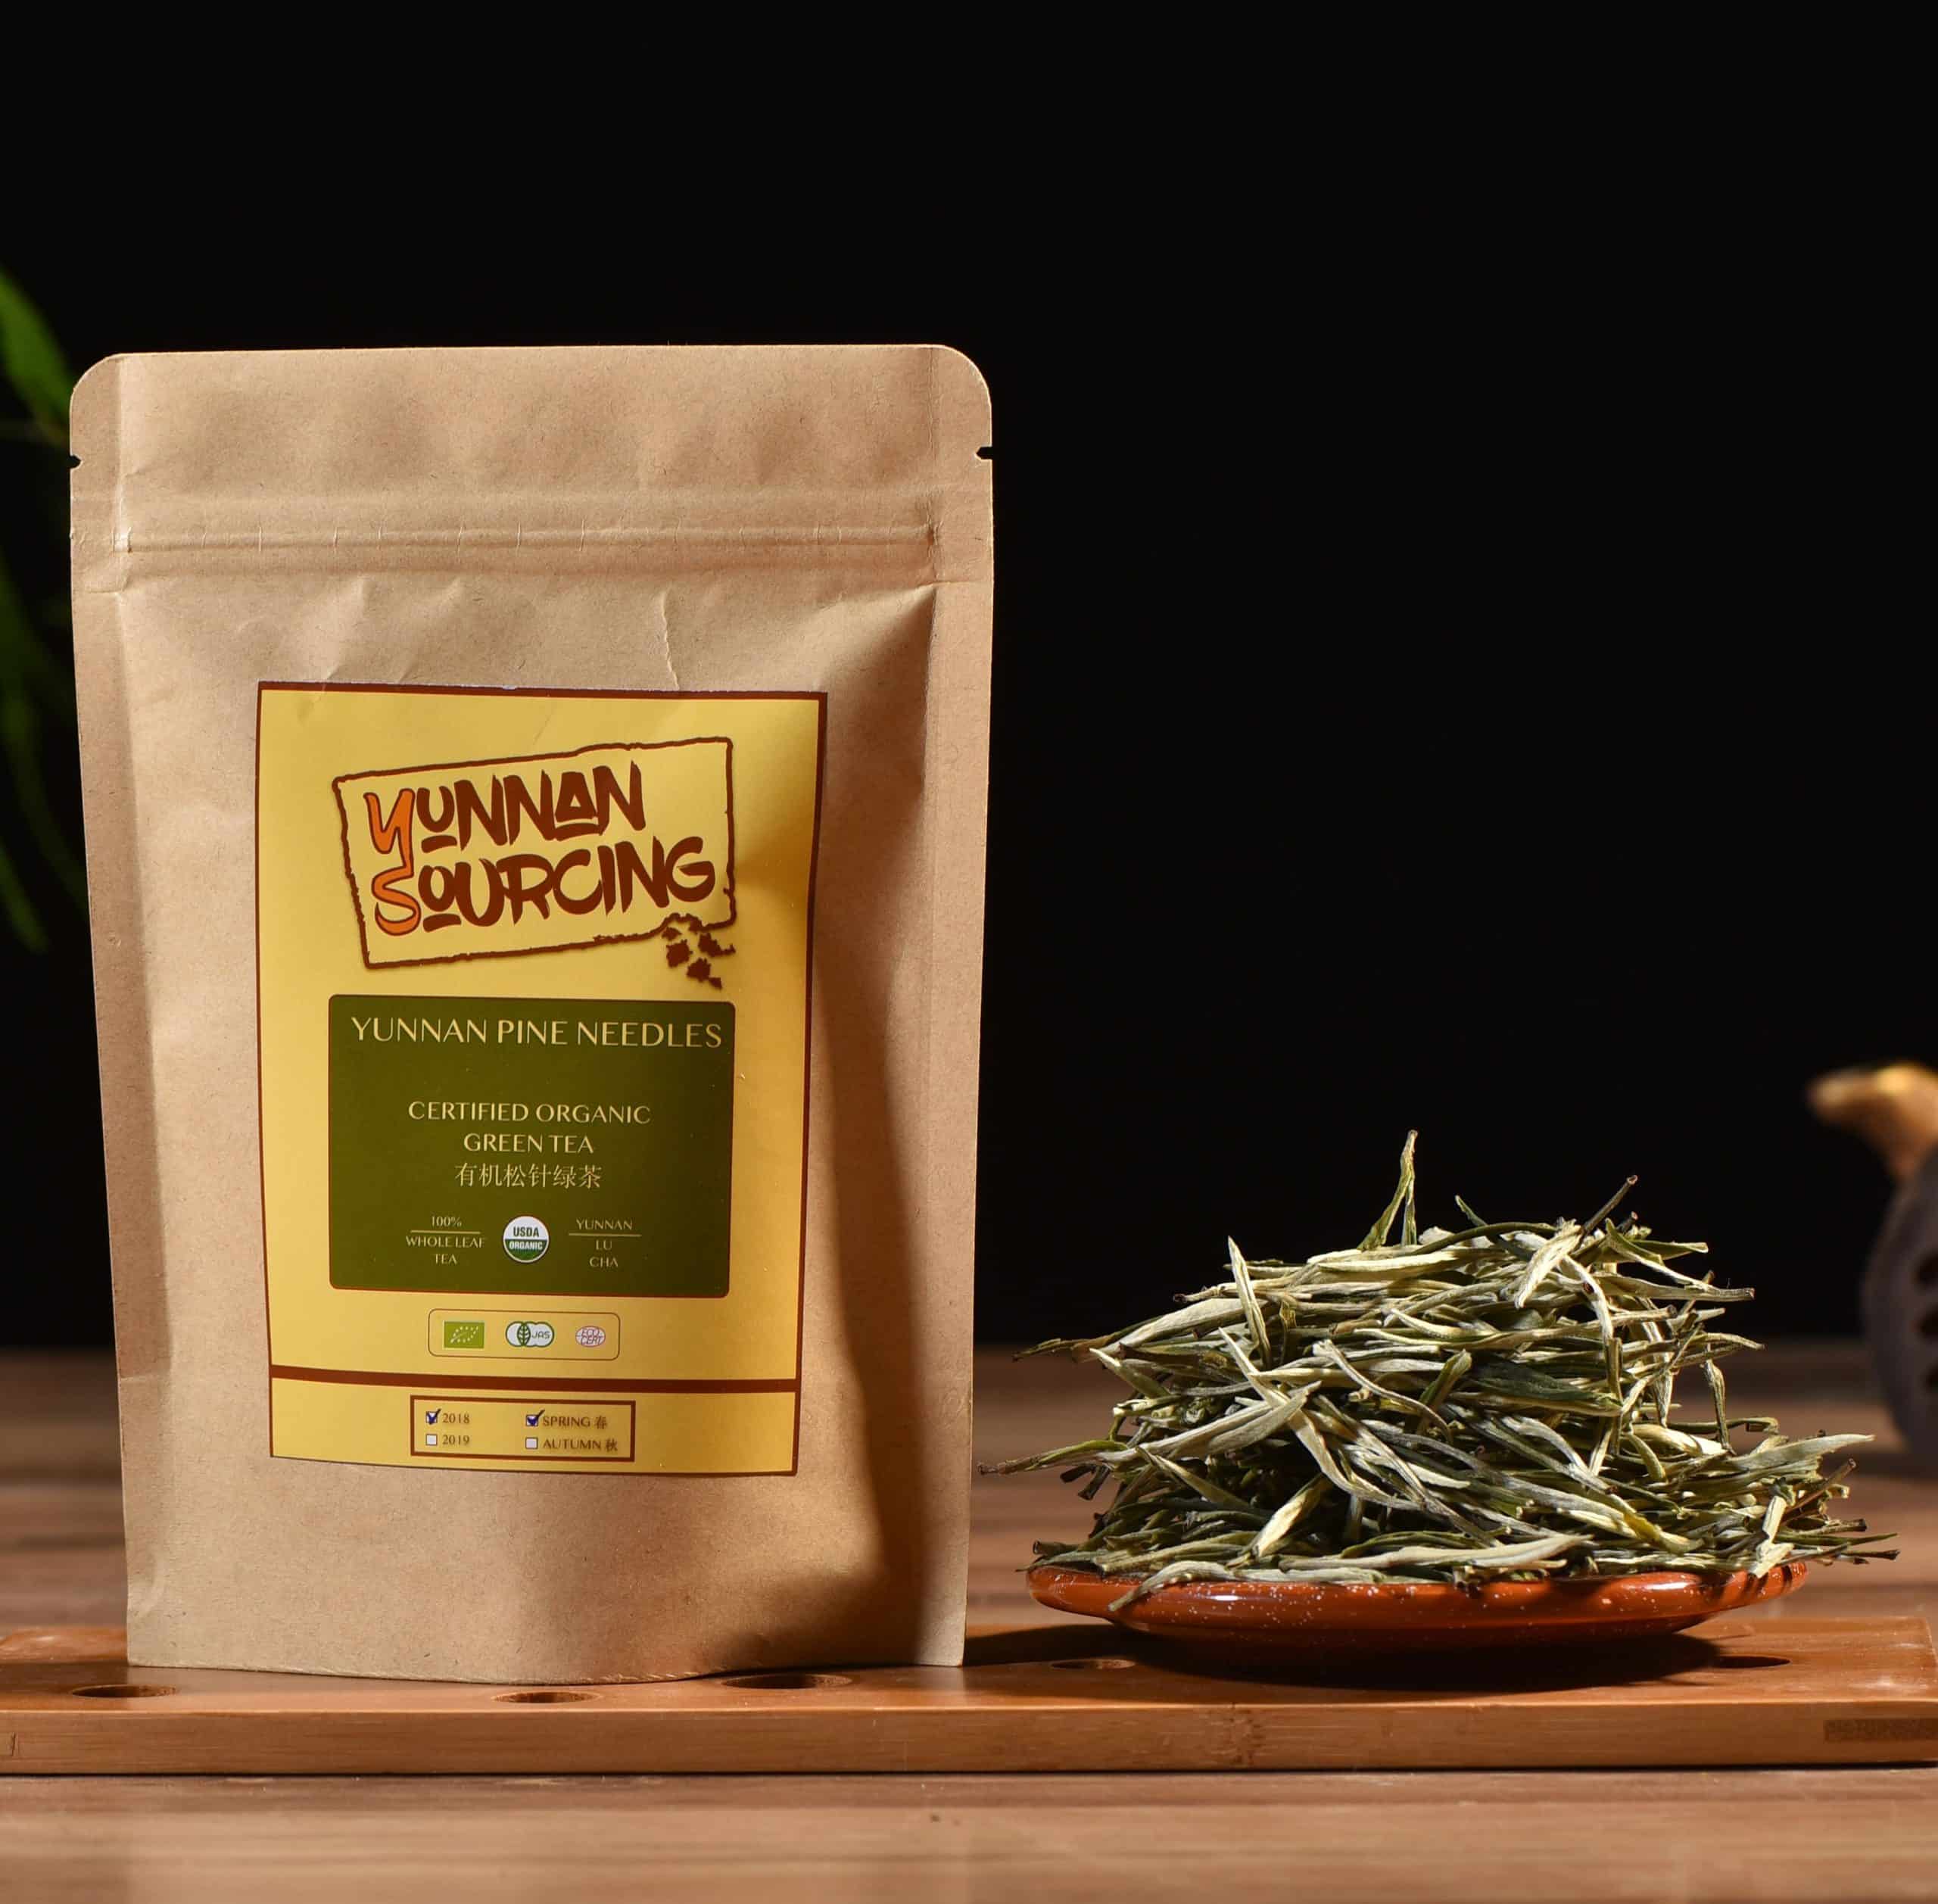 Yunnan Pine Needles Certified Organic Green Tea â Yunnan Sourcing Tea Shop